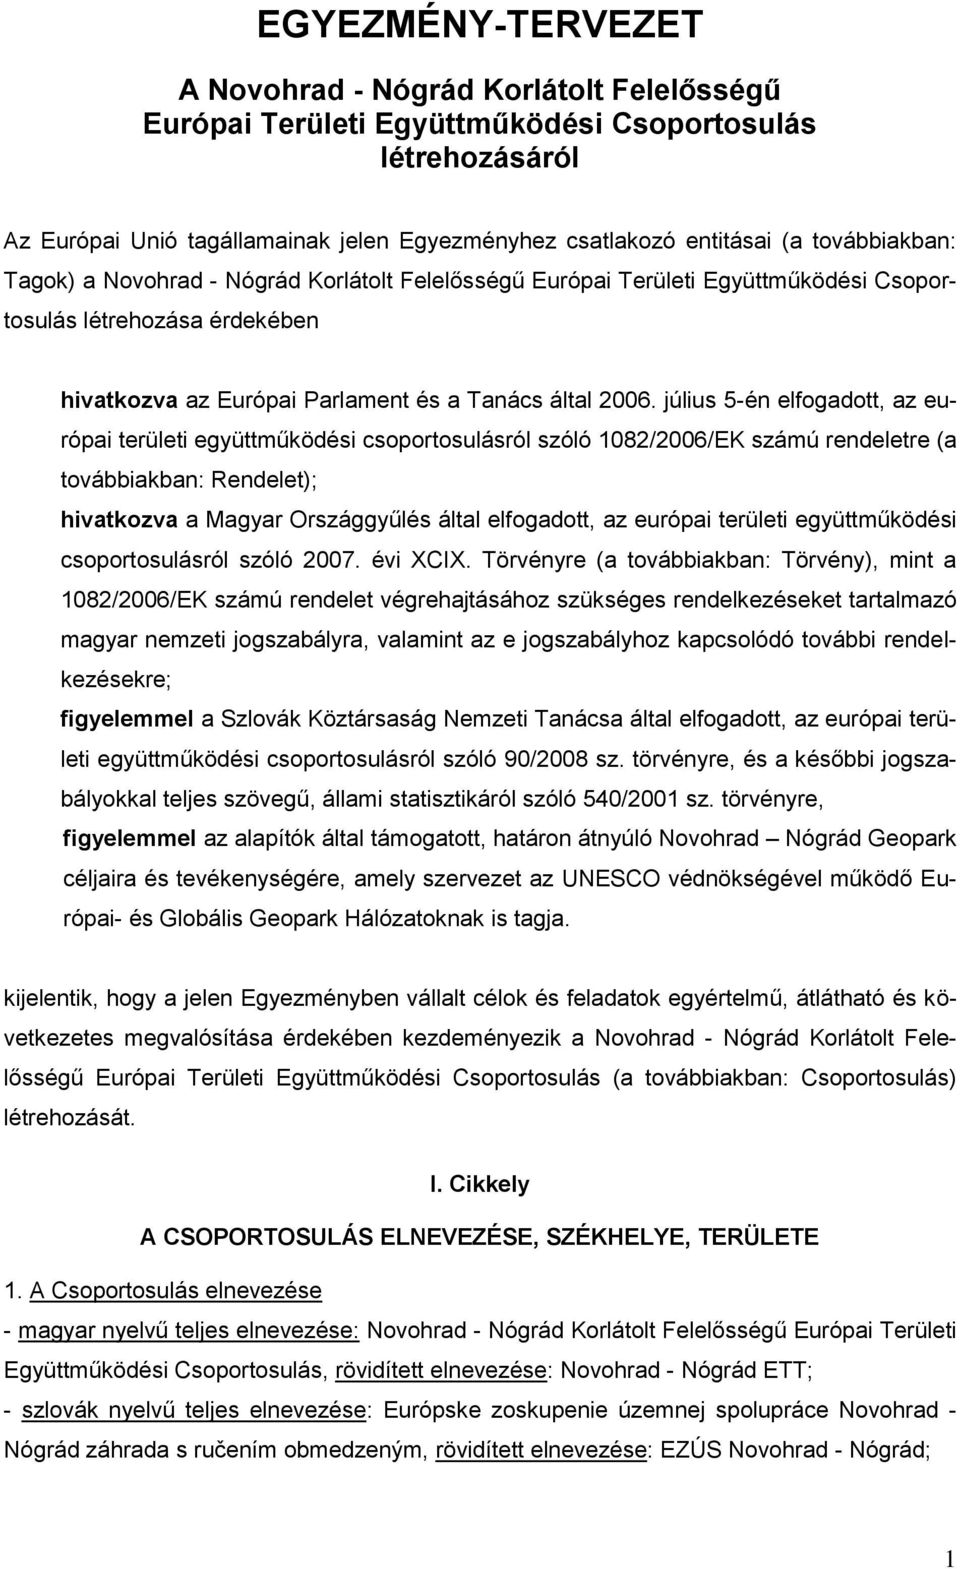 július 5-én elfogadott, az európai területi együttműködési csoportosulásról szóló 1082/2006/EK számú rendeletre (a továbbiakban: Rendelet); hivatkozva a Magyar Országgyűlés által elfogadott, az